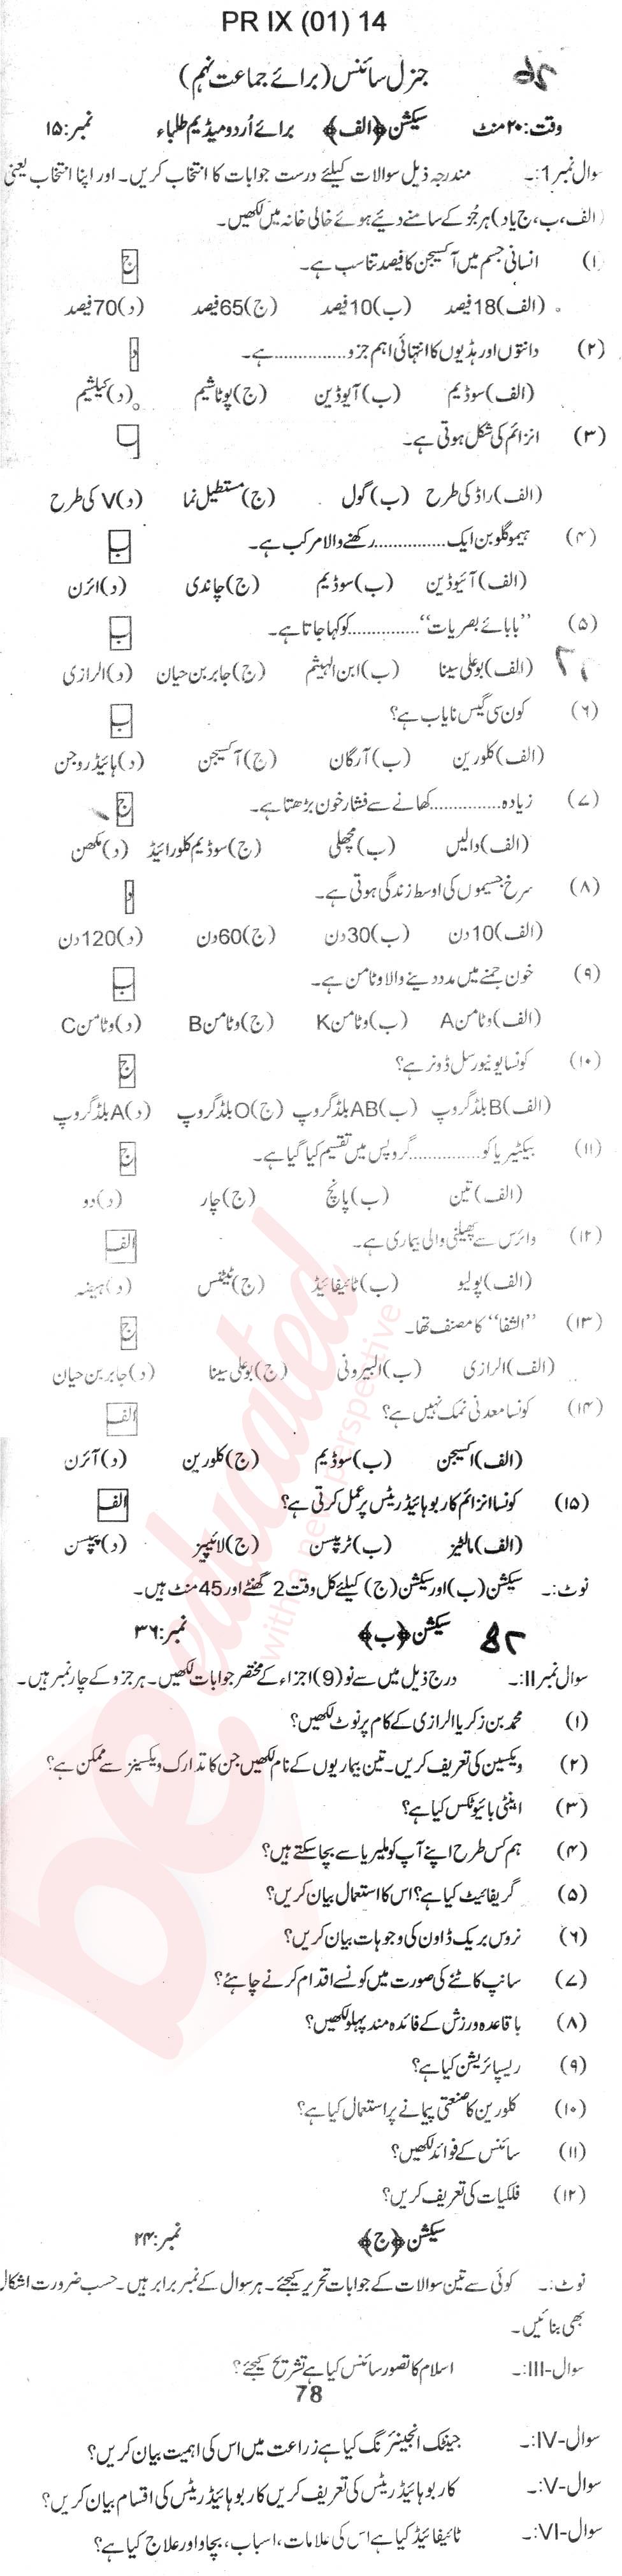 General Science 9th Urdu Medium Past Paper Group 1 BISE Swat 2014